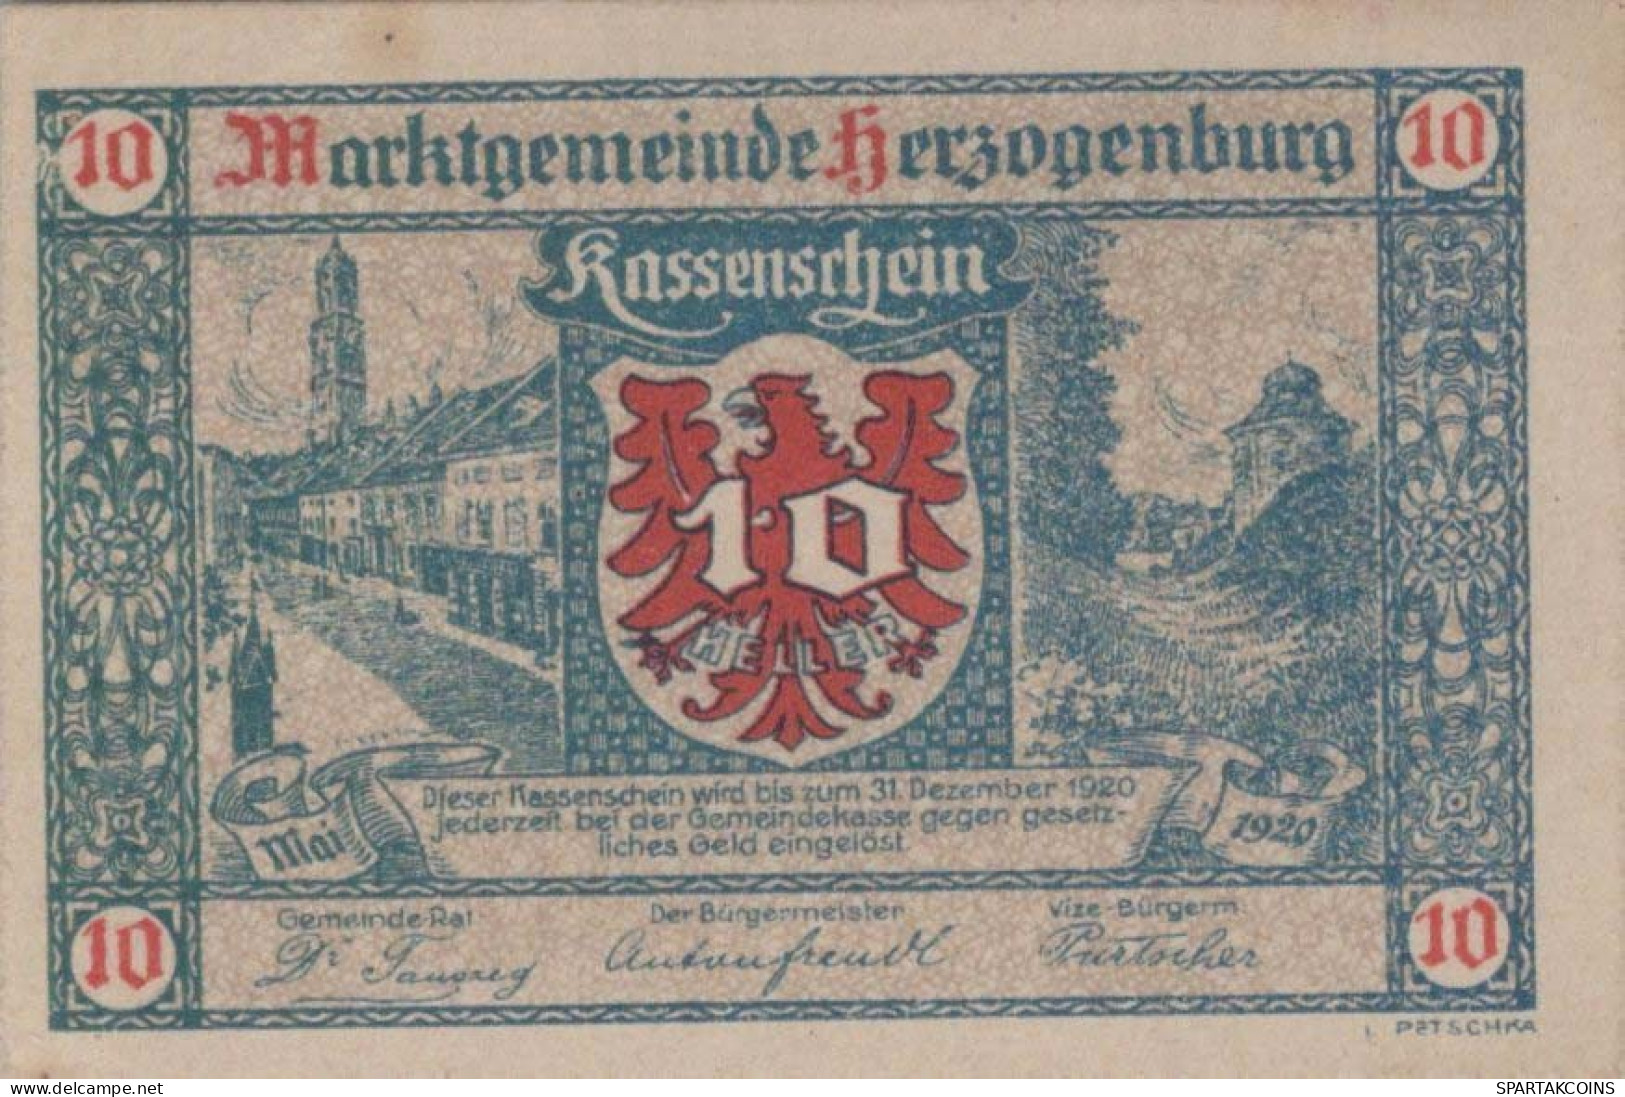 10 HELLER 1920 Stadt HERZOGENBURG Niedrigeren Österreich Notgeld #PD598 - [11] Emisiones Locales